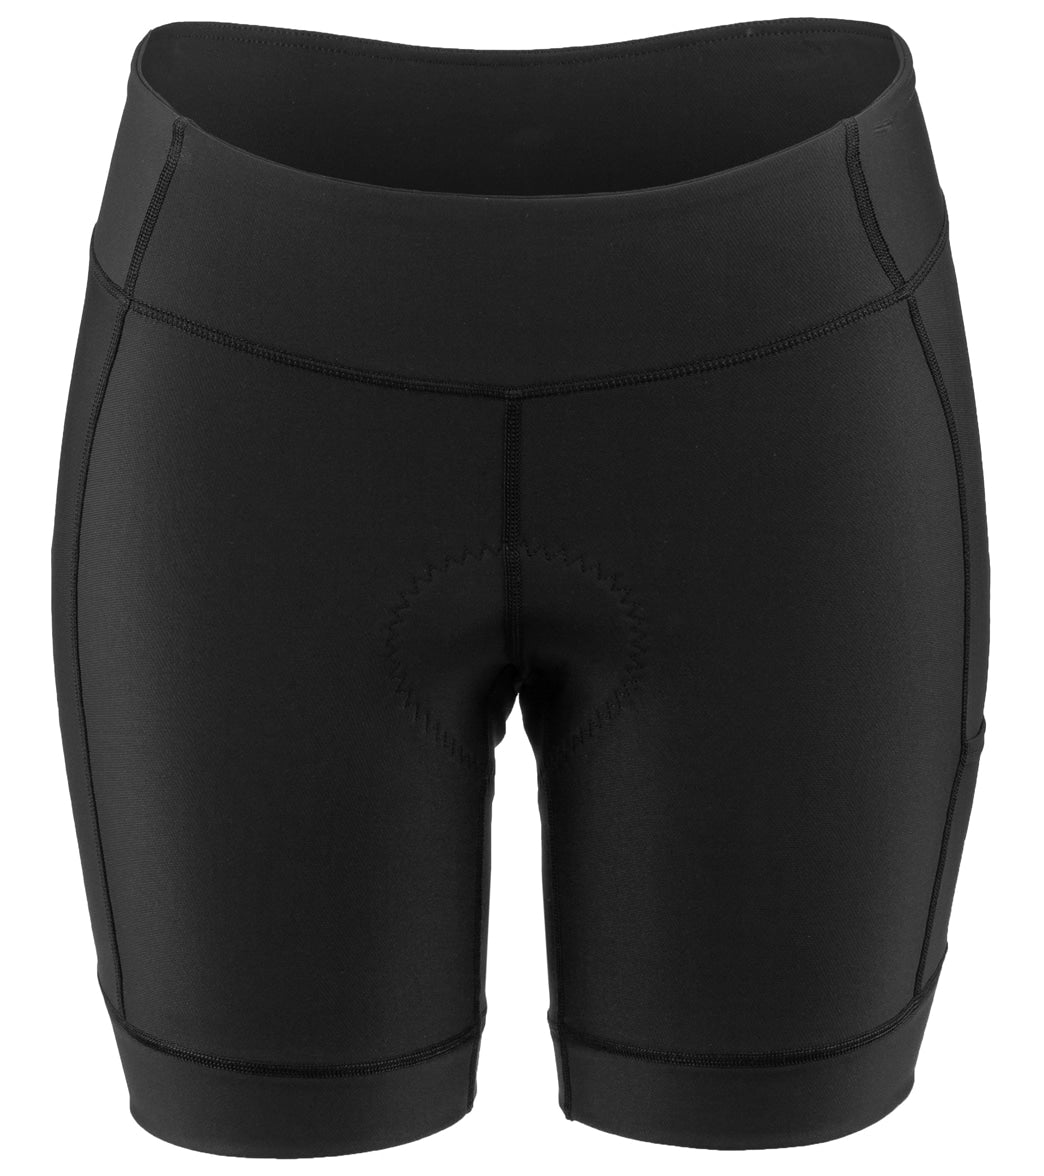 Louis Garneau Women's Fit Sensor 2 7.5 Cycling Short - Black Large - Swimoutlet.com